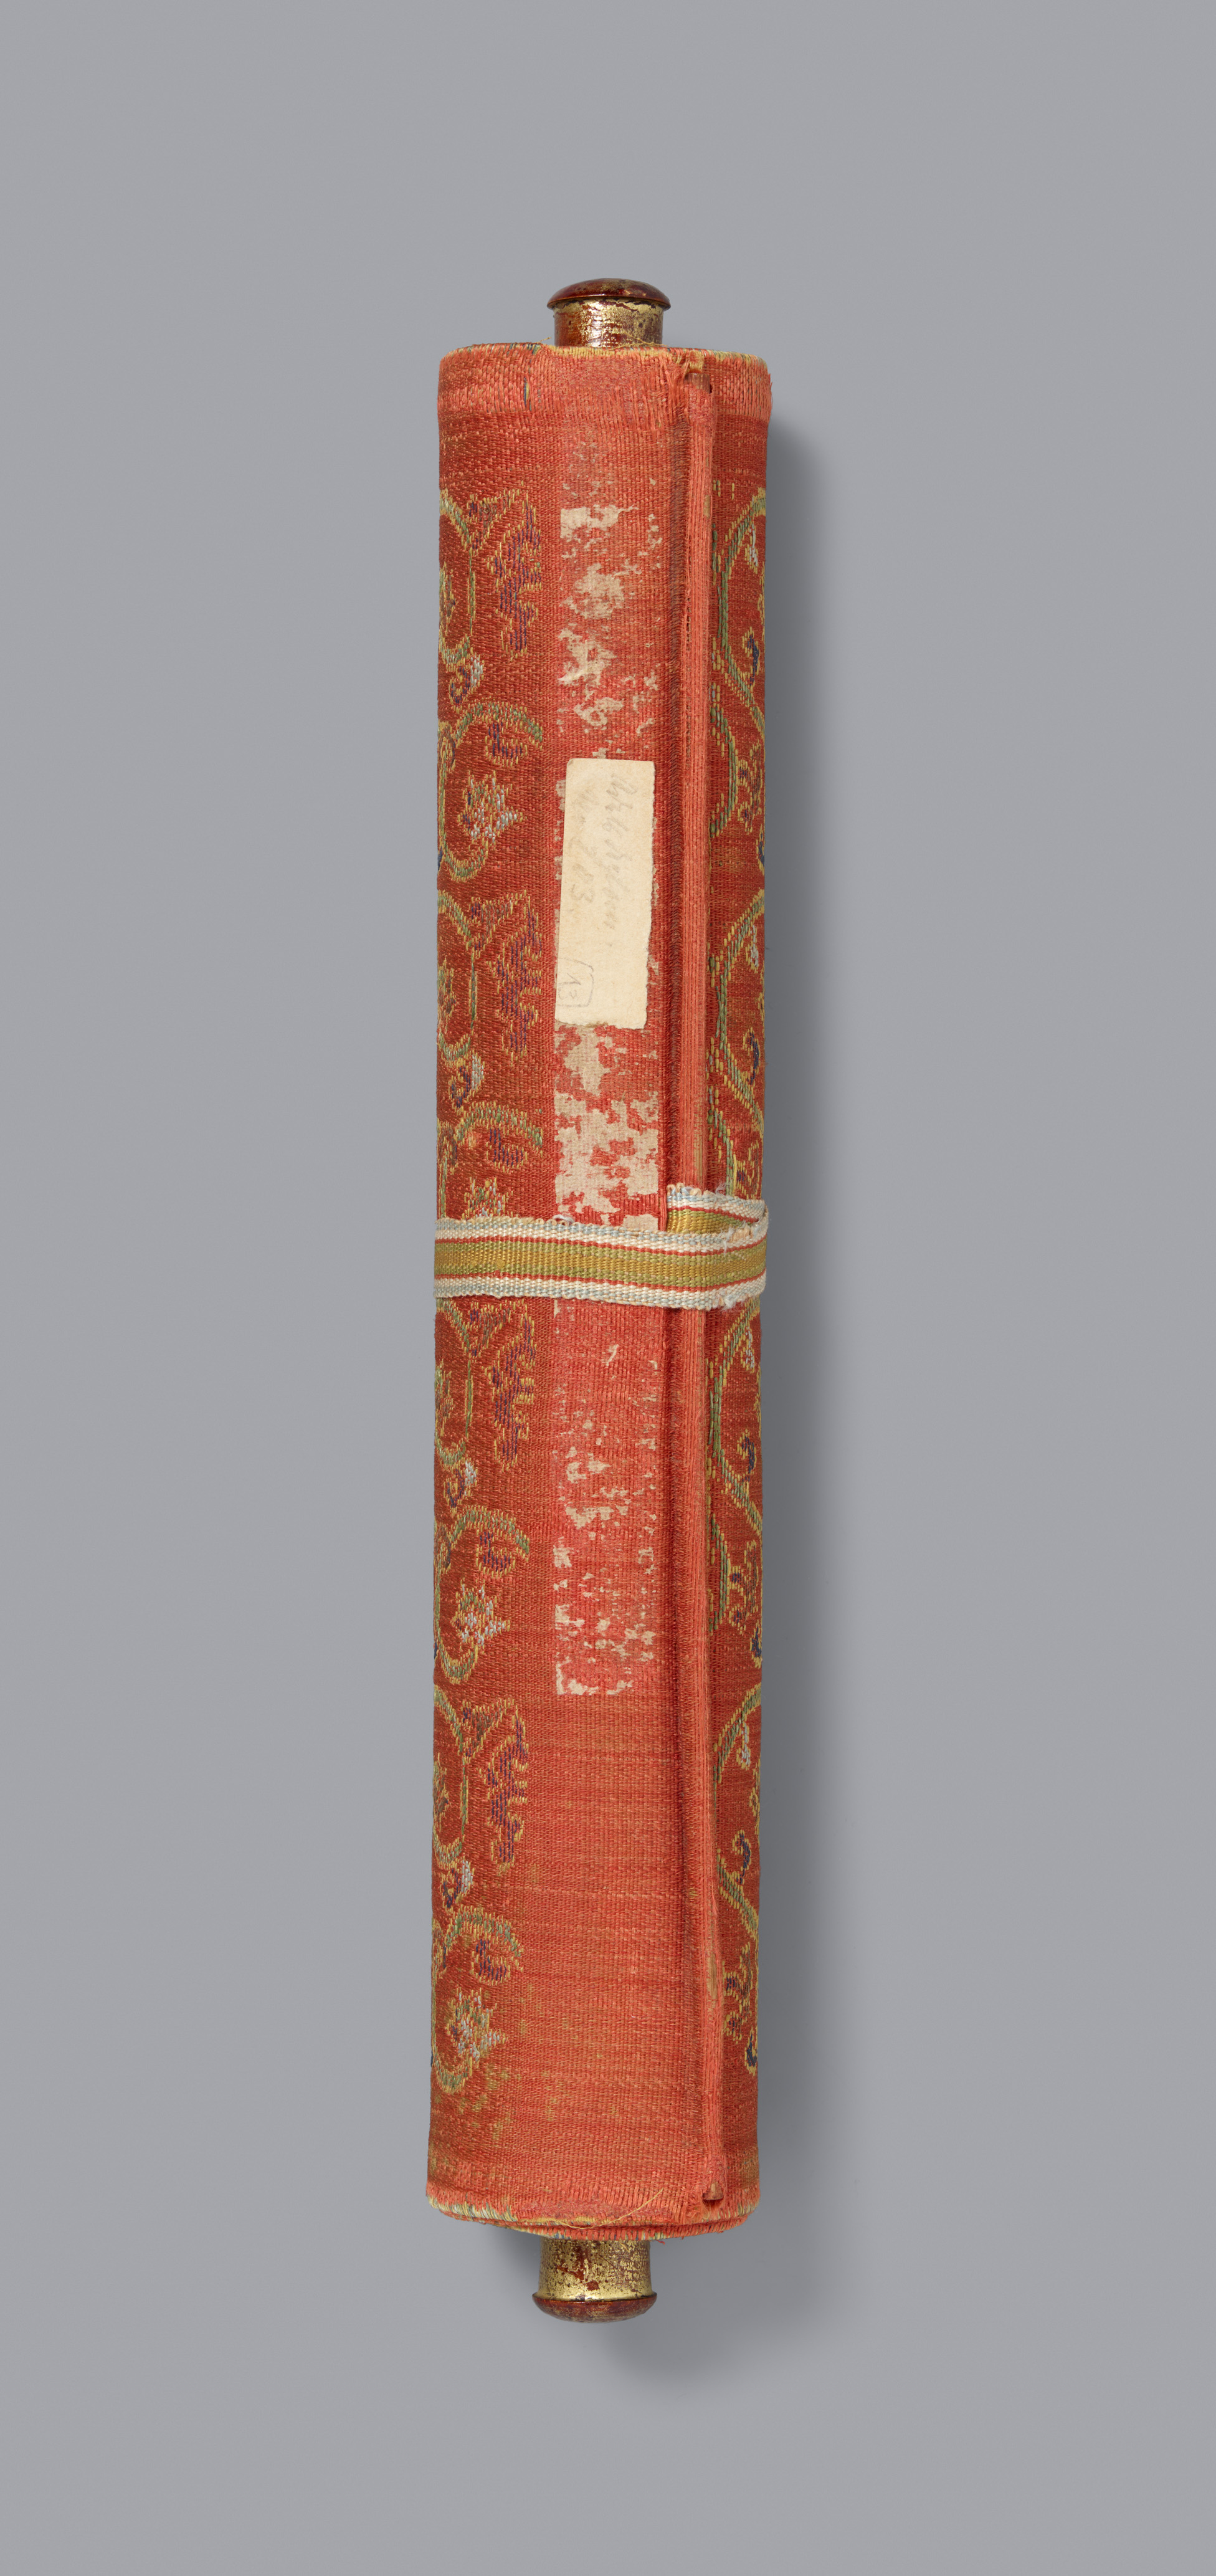 Anonym . Qing-Zeit, datiert 1785 - Kaiserliche Ernennungsurkunde in chinesischer und mandschurischer Schrift. - image-2